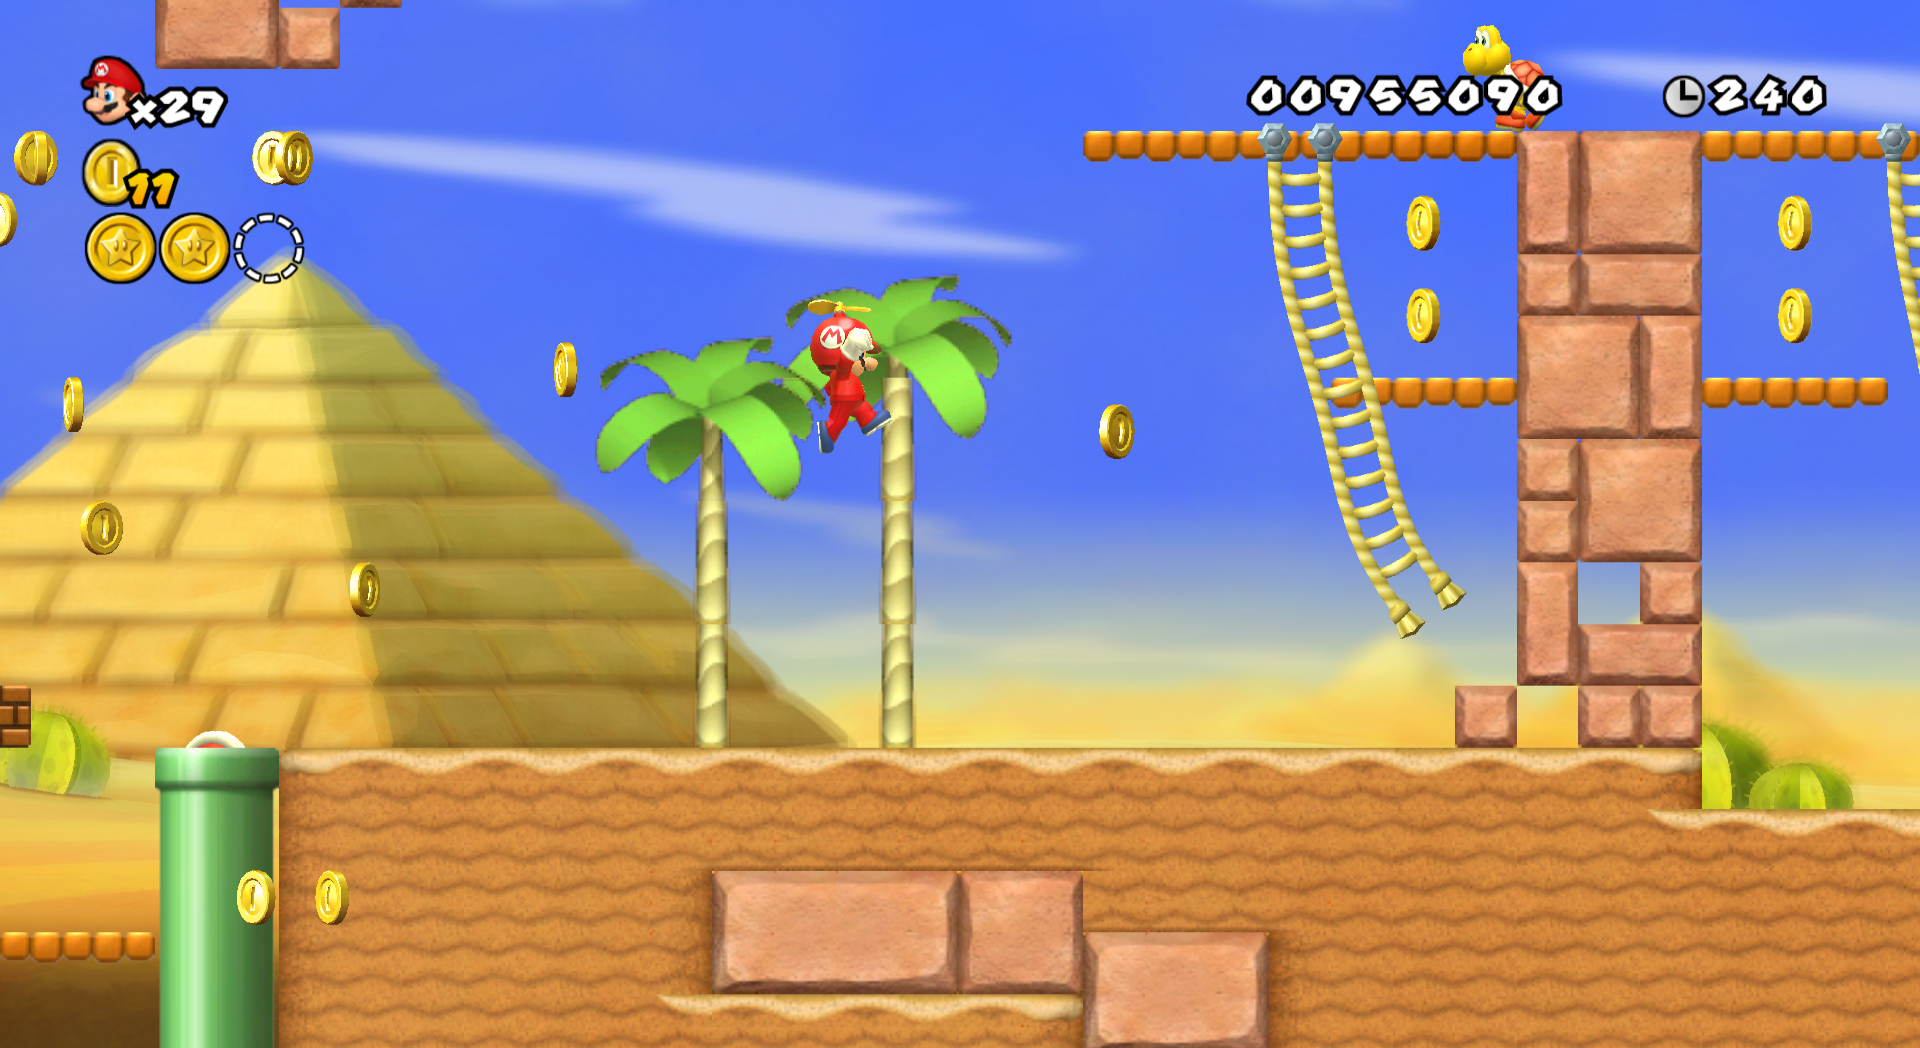 Newer Super Mario Bros Wii World Second 6409